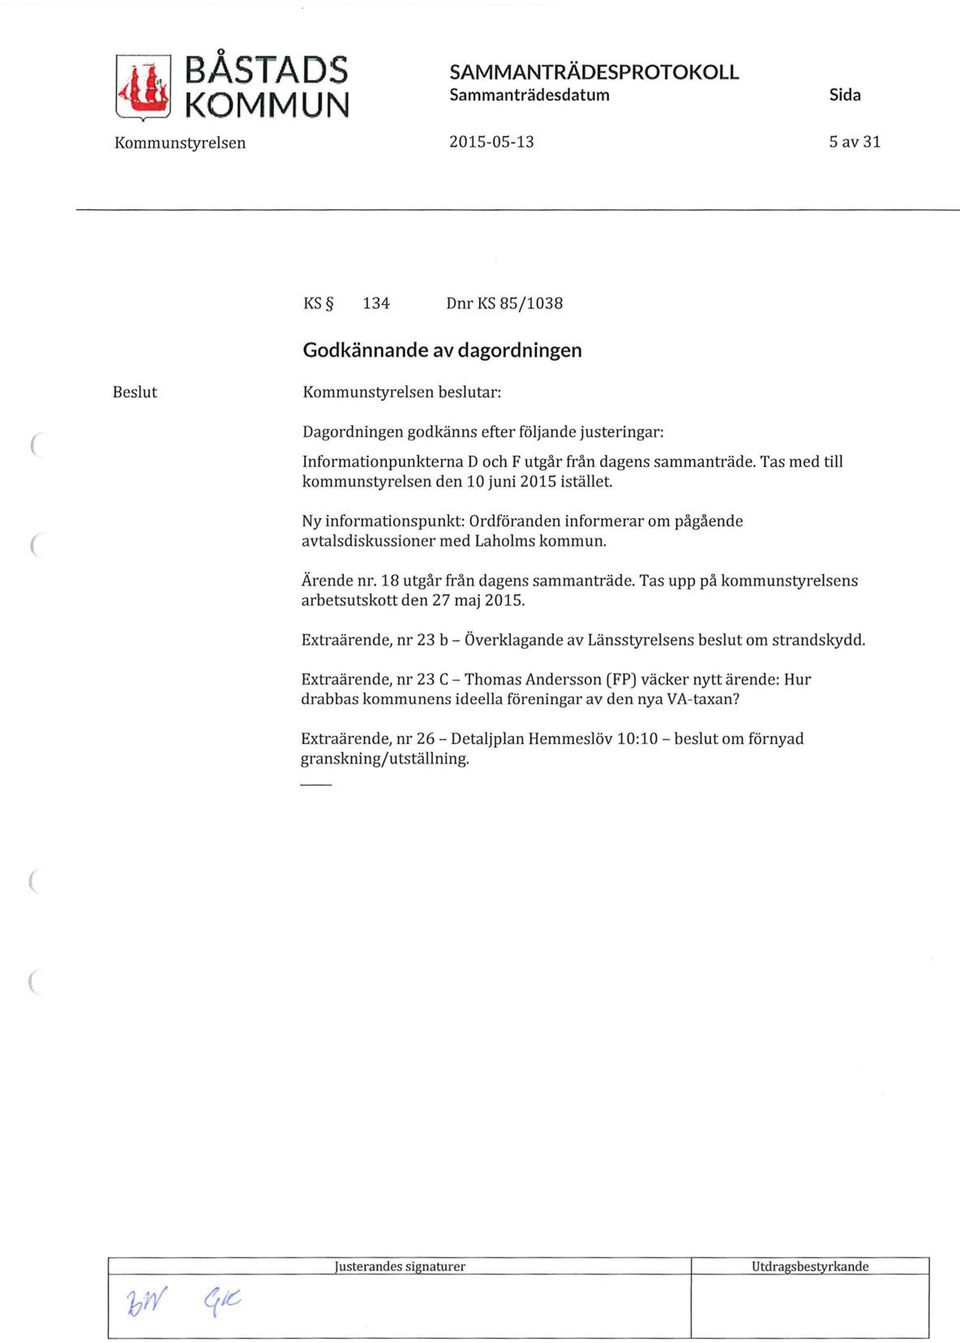 Ny informationspunkt: Ordföranden informerar om pågående avtalsdiskussioner med Laholms kommun. Ärende nr. 18 utgår från dagens sammanträde. Tas upp på kommunstyrelsens arbetsutskott den 27 maj 2015.